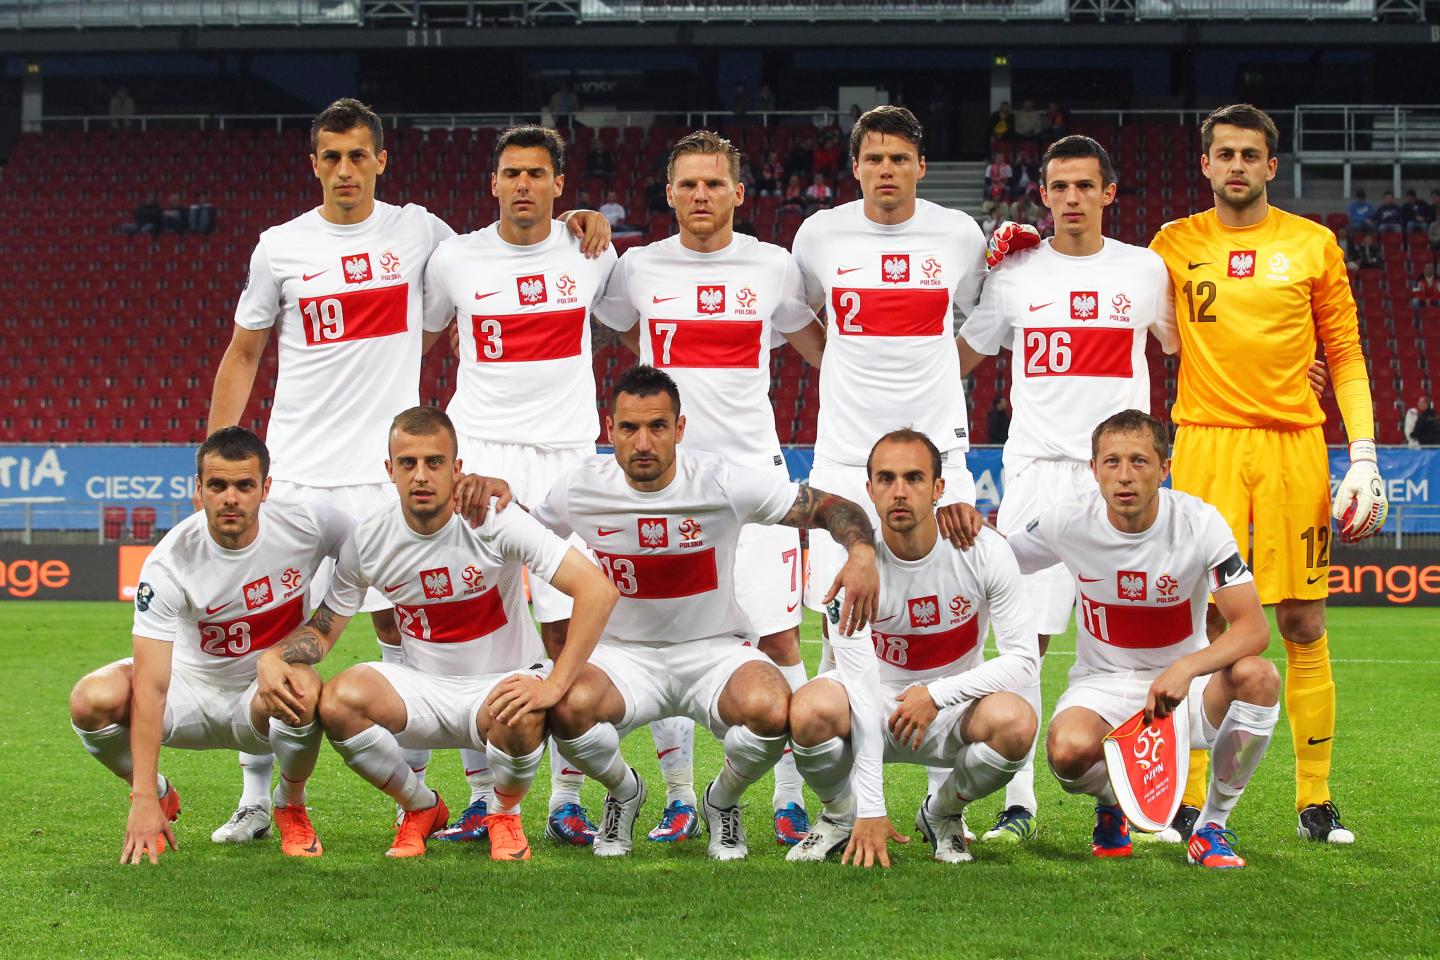 Reprezentacja Polski (w białych koszulkach z poziomym czerwonym pasem) przed meczem towarzyskim z Łotwą.